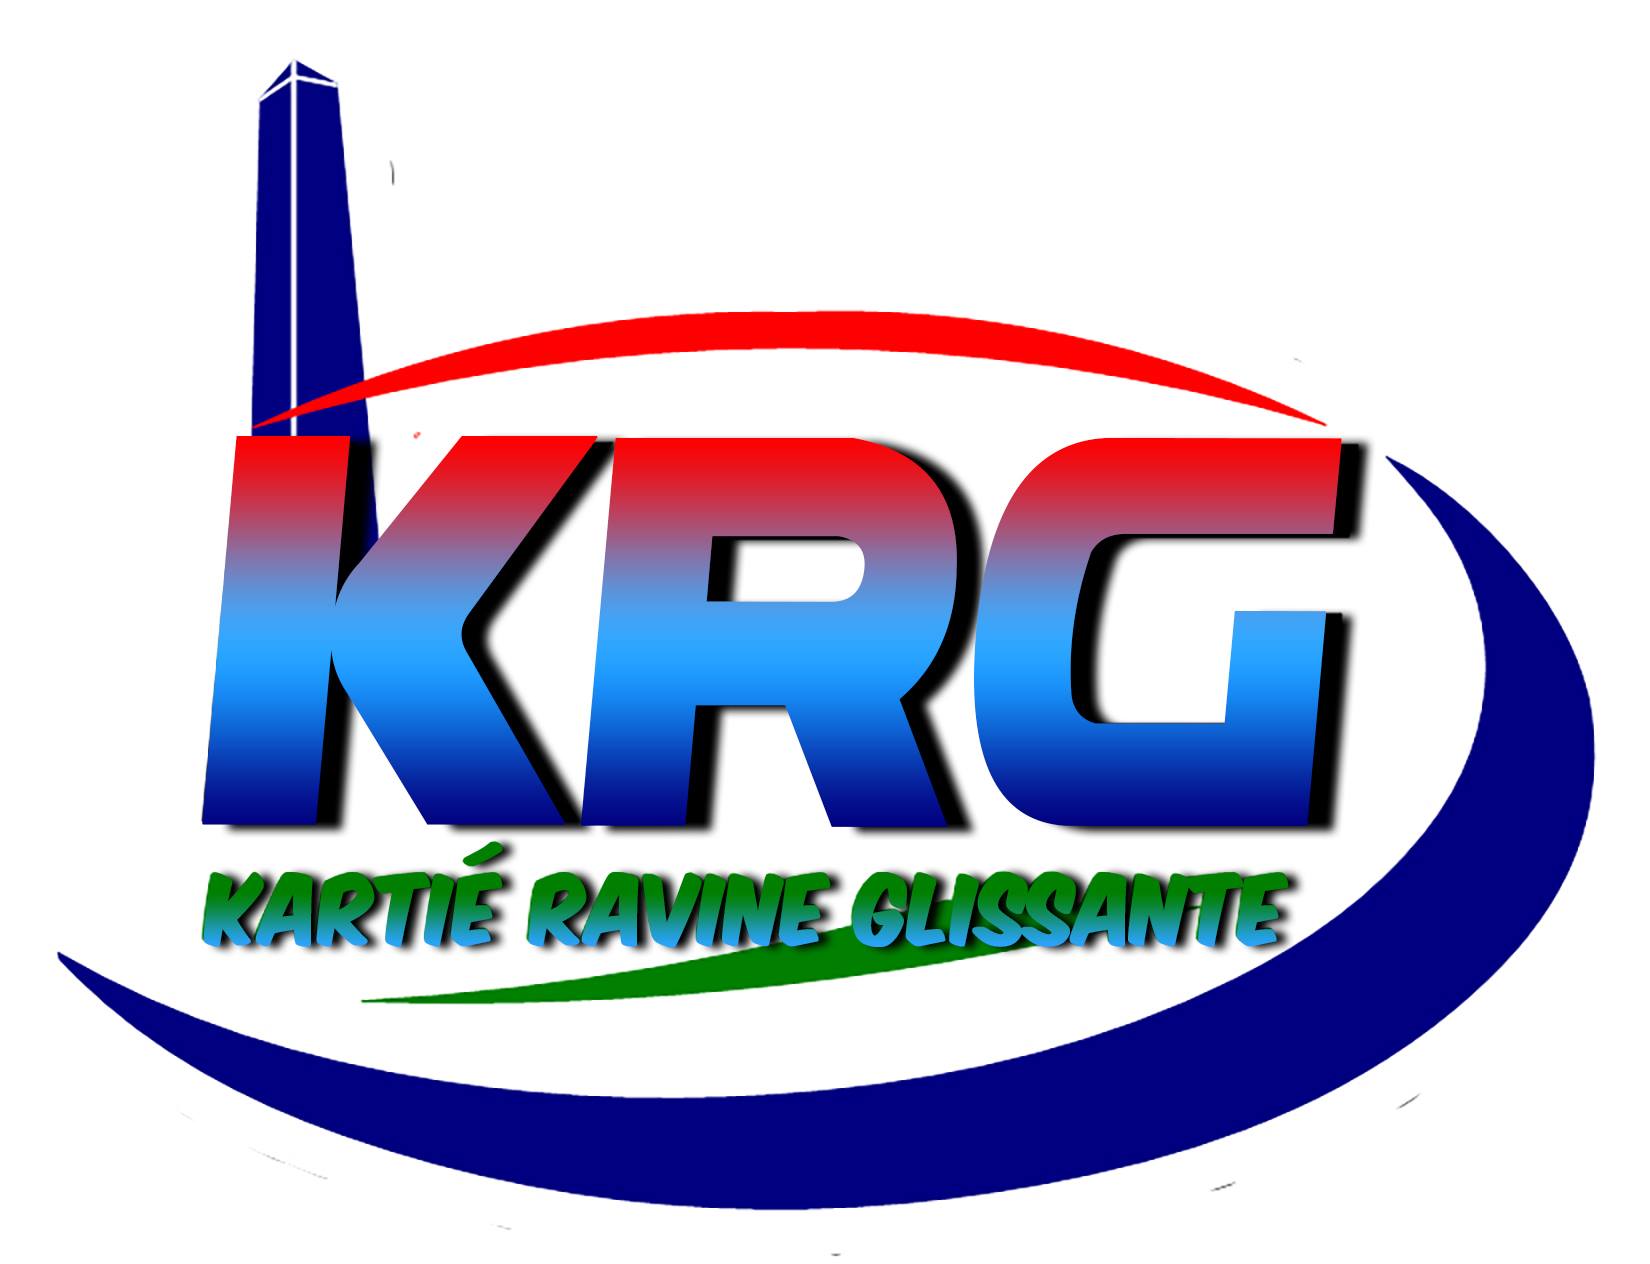 logo krg.jpg